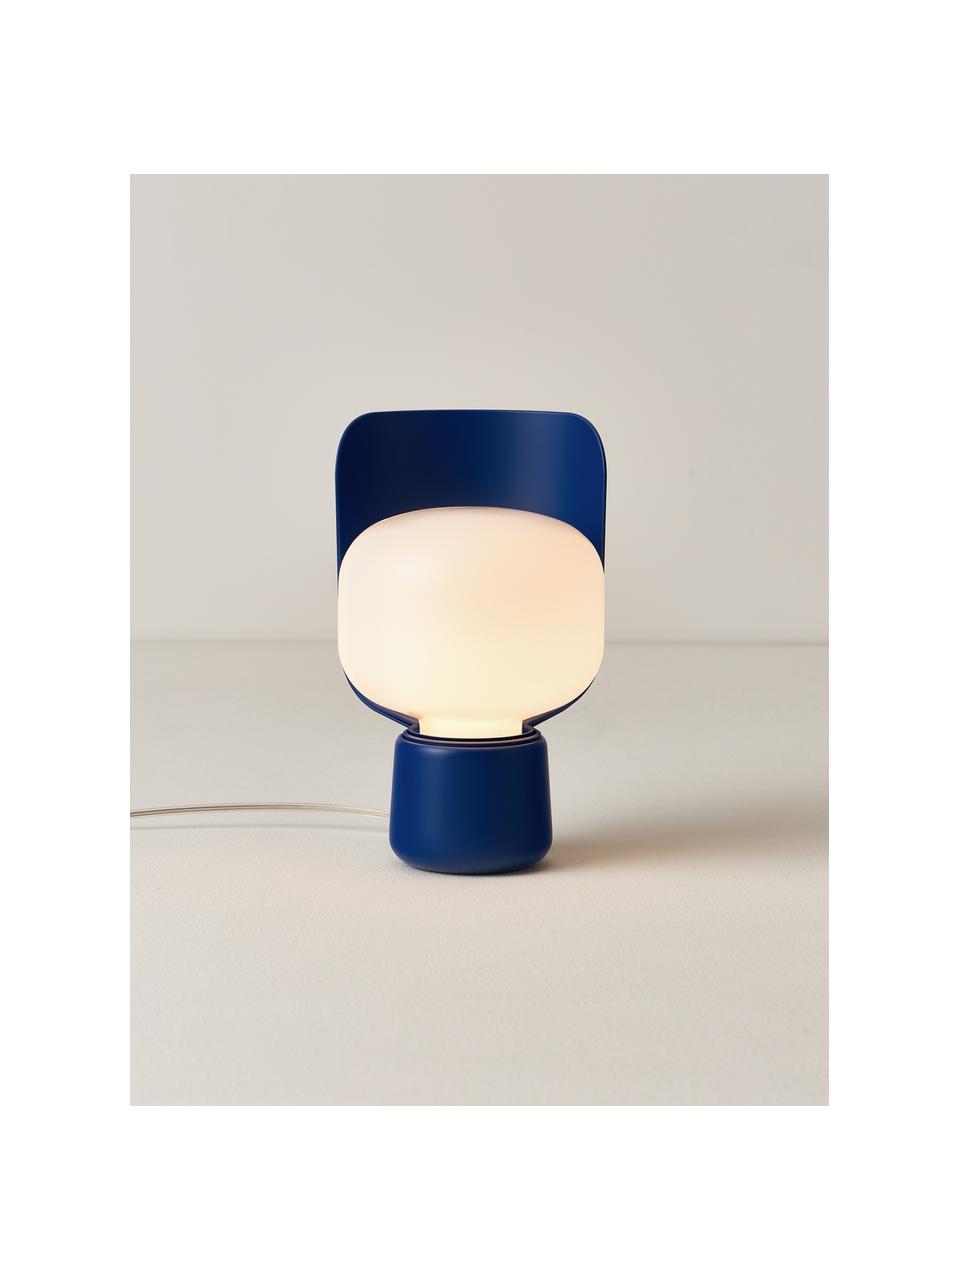 Malá stolní lampa Blom, ručně vyrobená, Bílá, tmavě modrá, Ø 15 cm, V 24 cm